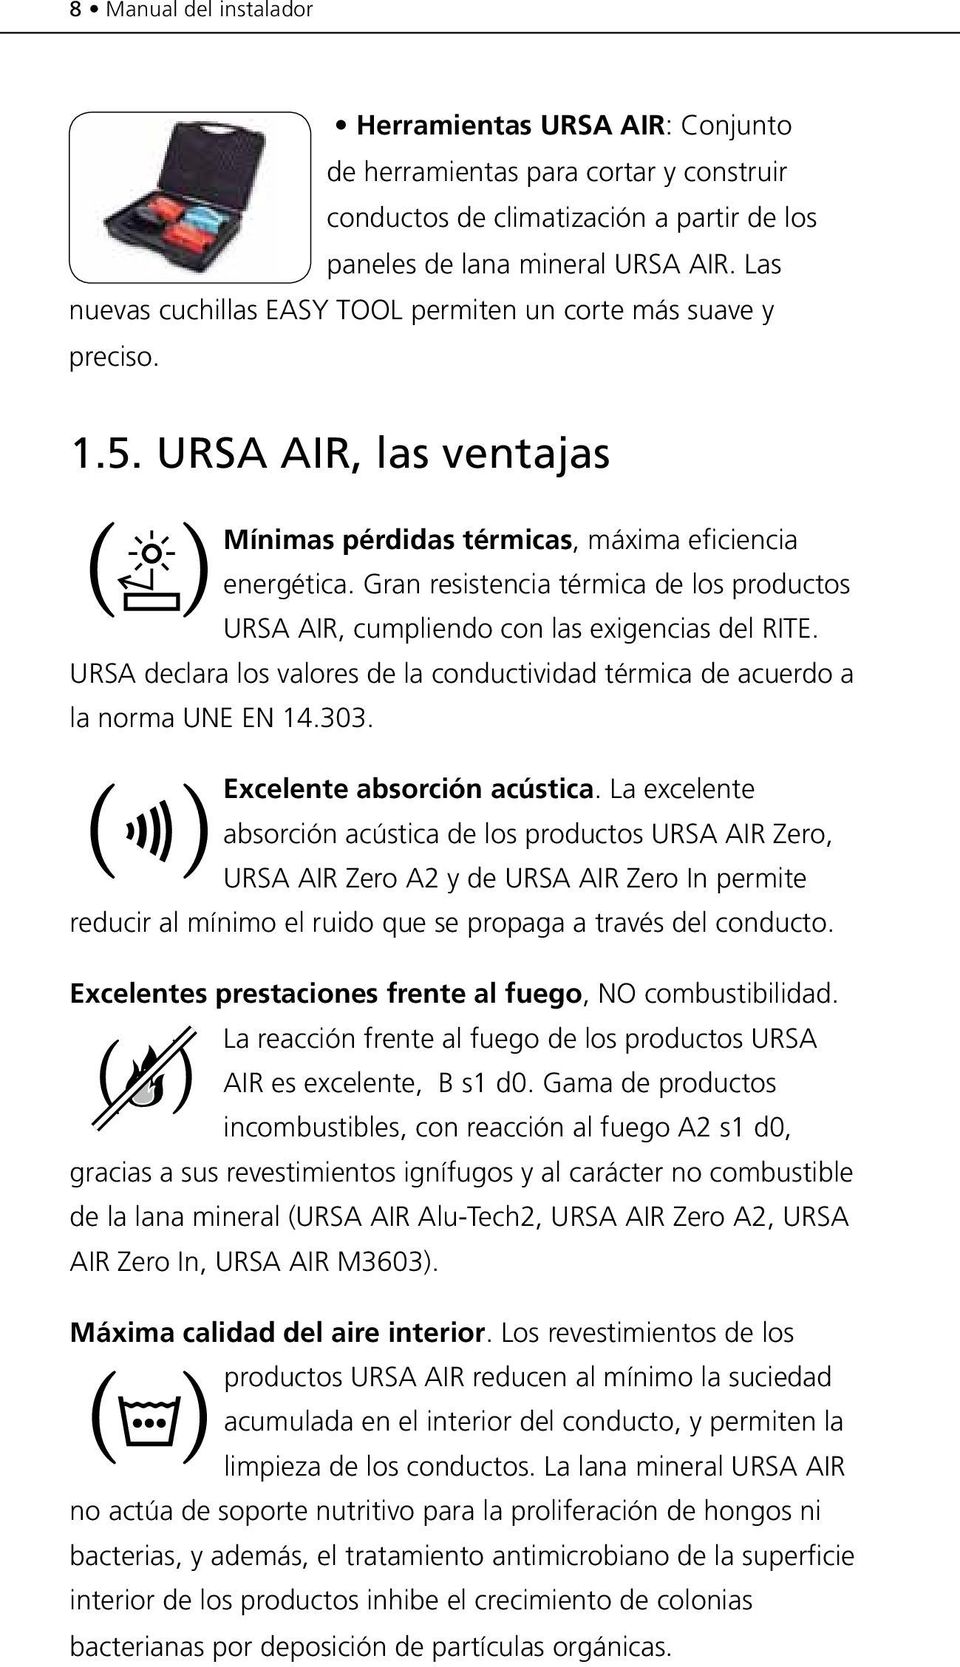 Gran resistencia térmica de los productos URSA AIR, cumpliendo con las exigencias del RITE. URSA declara los valores de la conductividad térmica de acuerdo a la norma UNE EN 14.303.